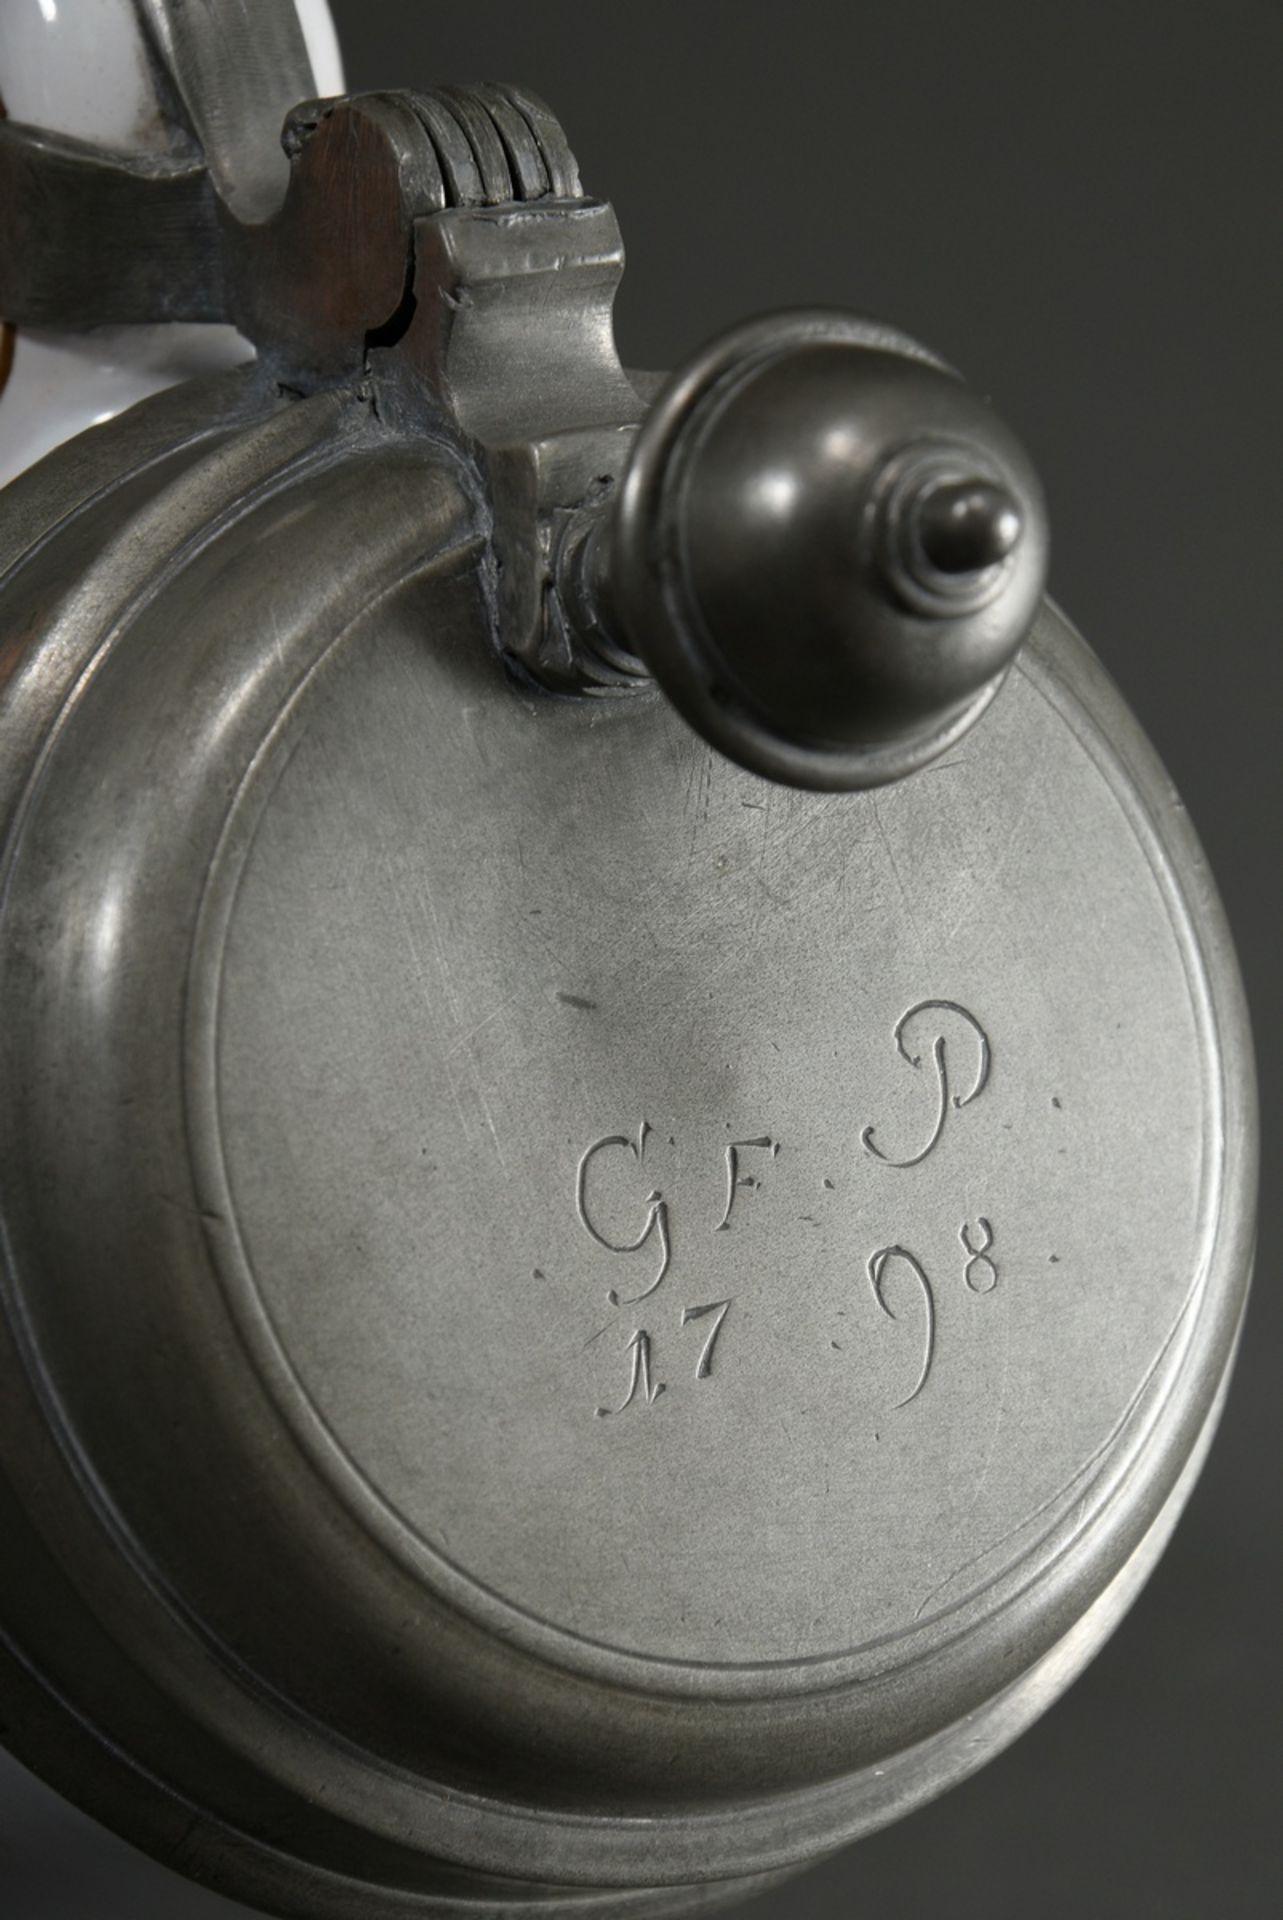 Proskauer Walzenkrug in Zylinderform mit Ohrenhenkel, Fayence weiß glasiert mit polychromer Muffelf - Bild 5 aus 7